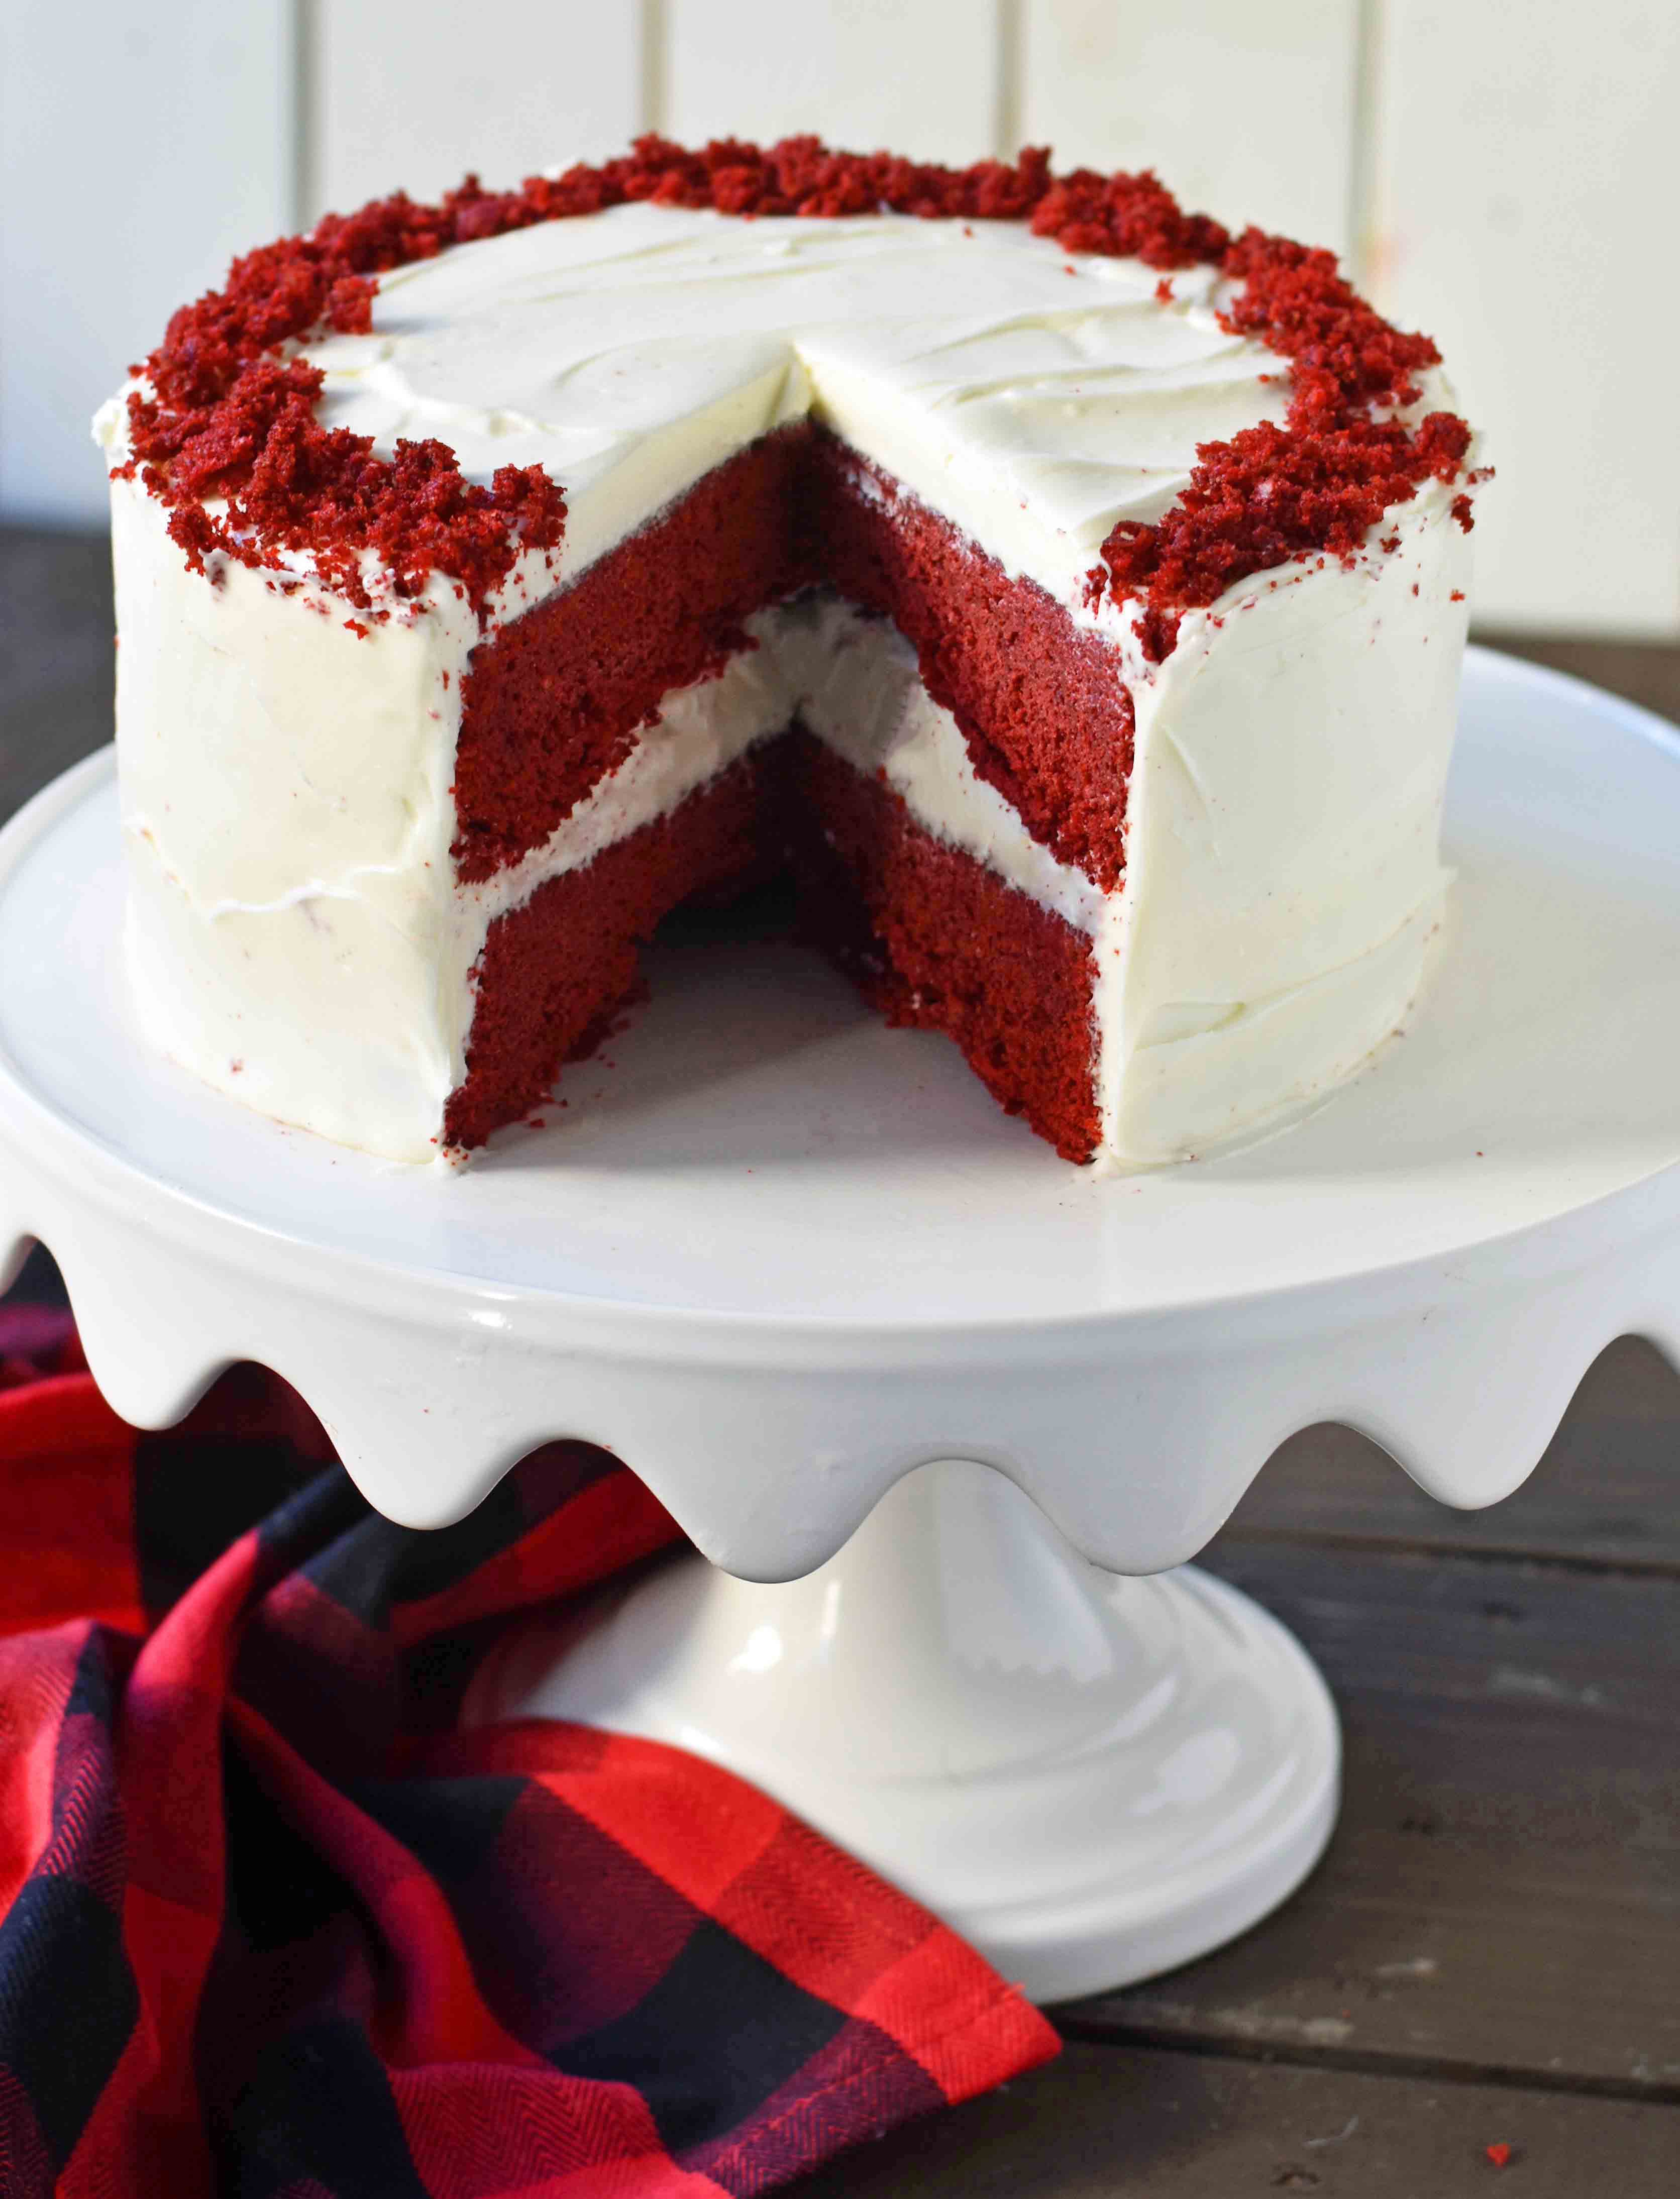 Red Velvet Cake. The best red velvet cake recipe ever. Moist and tender red velvet cake with sweet cream cheese frosting. The perfect red velvet cake recipe. www.modernhoney.com